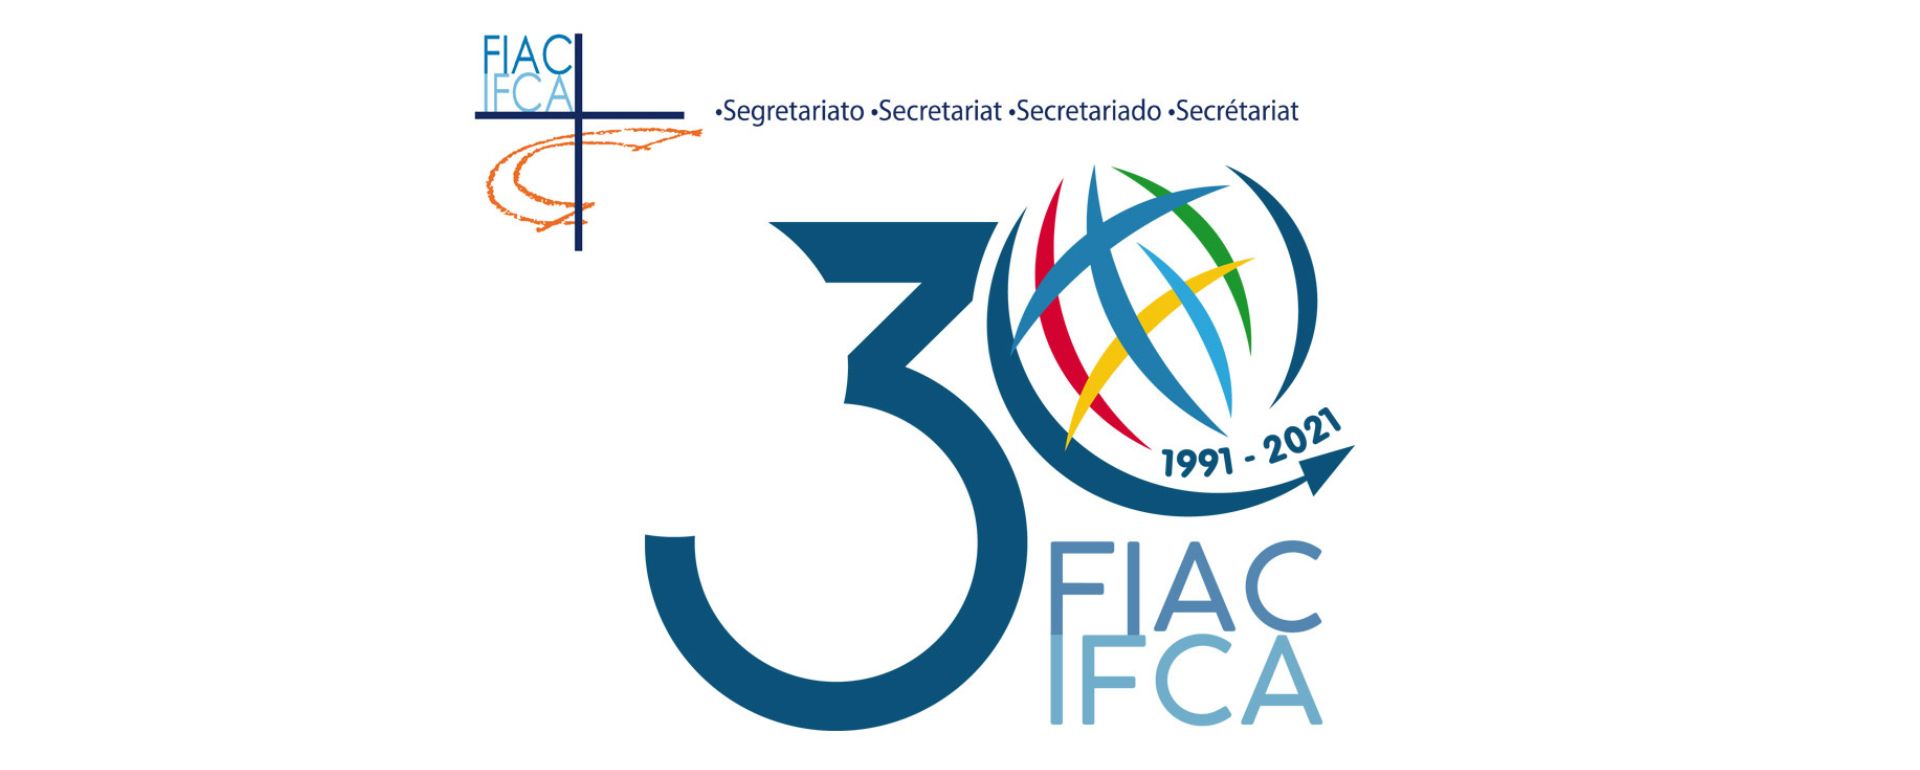 IFCA Secretariat 1991-2021